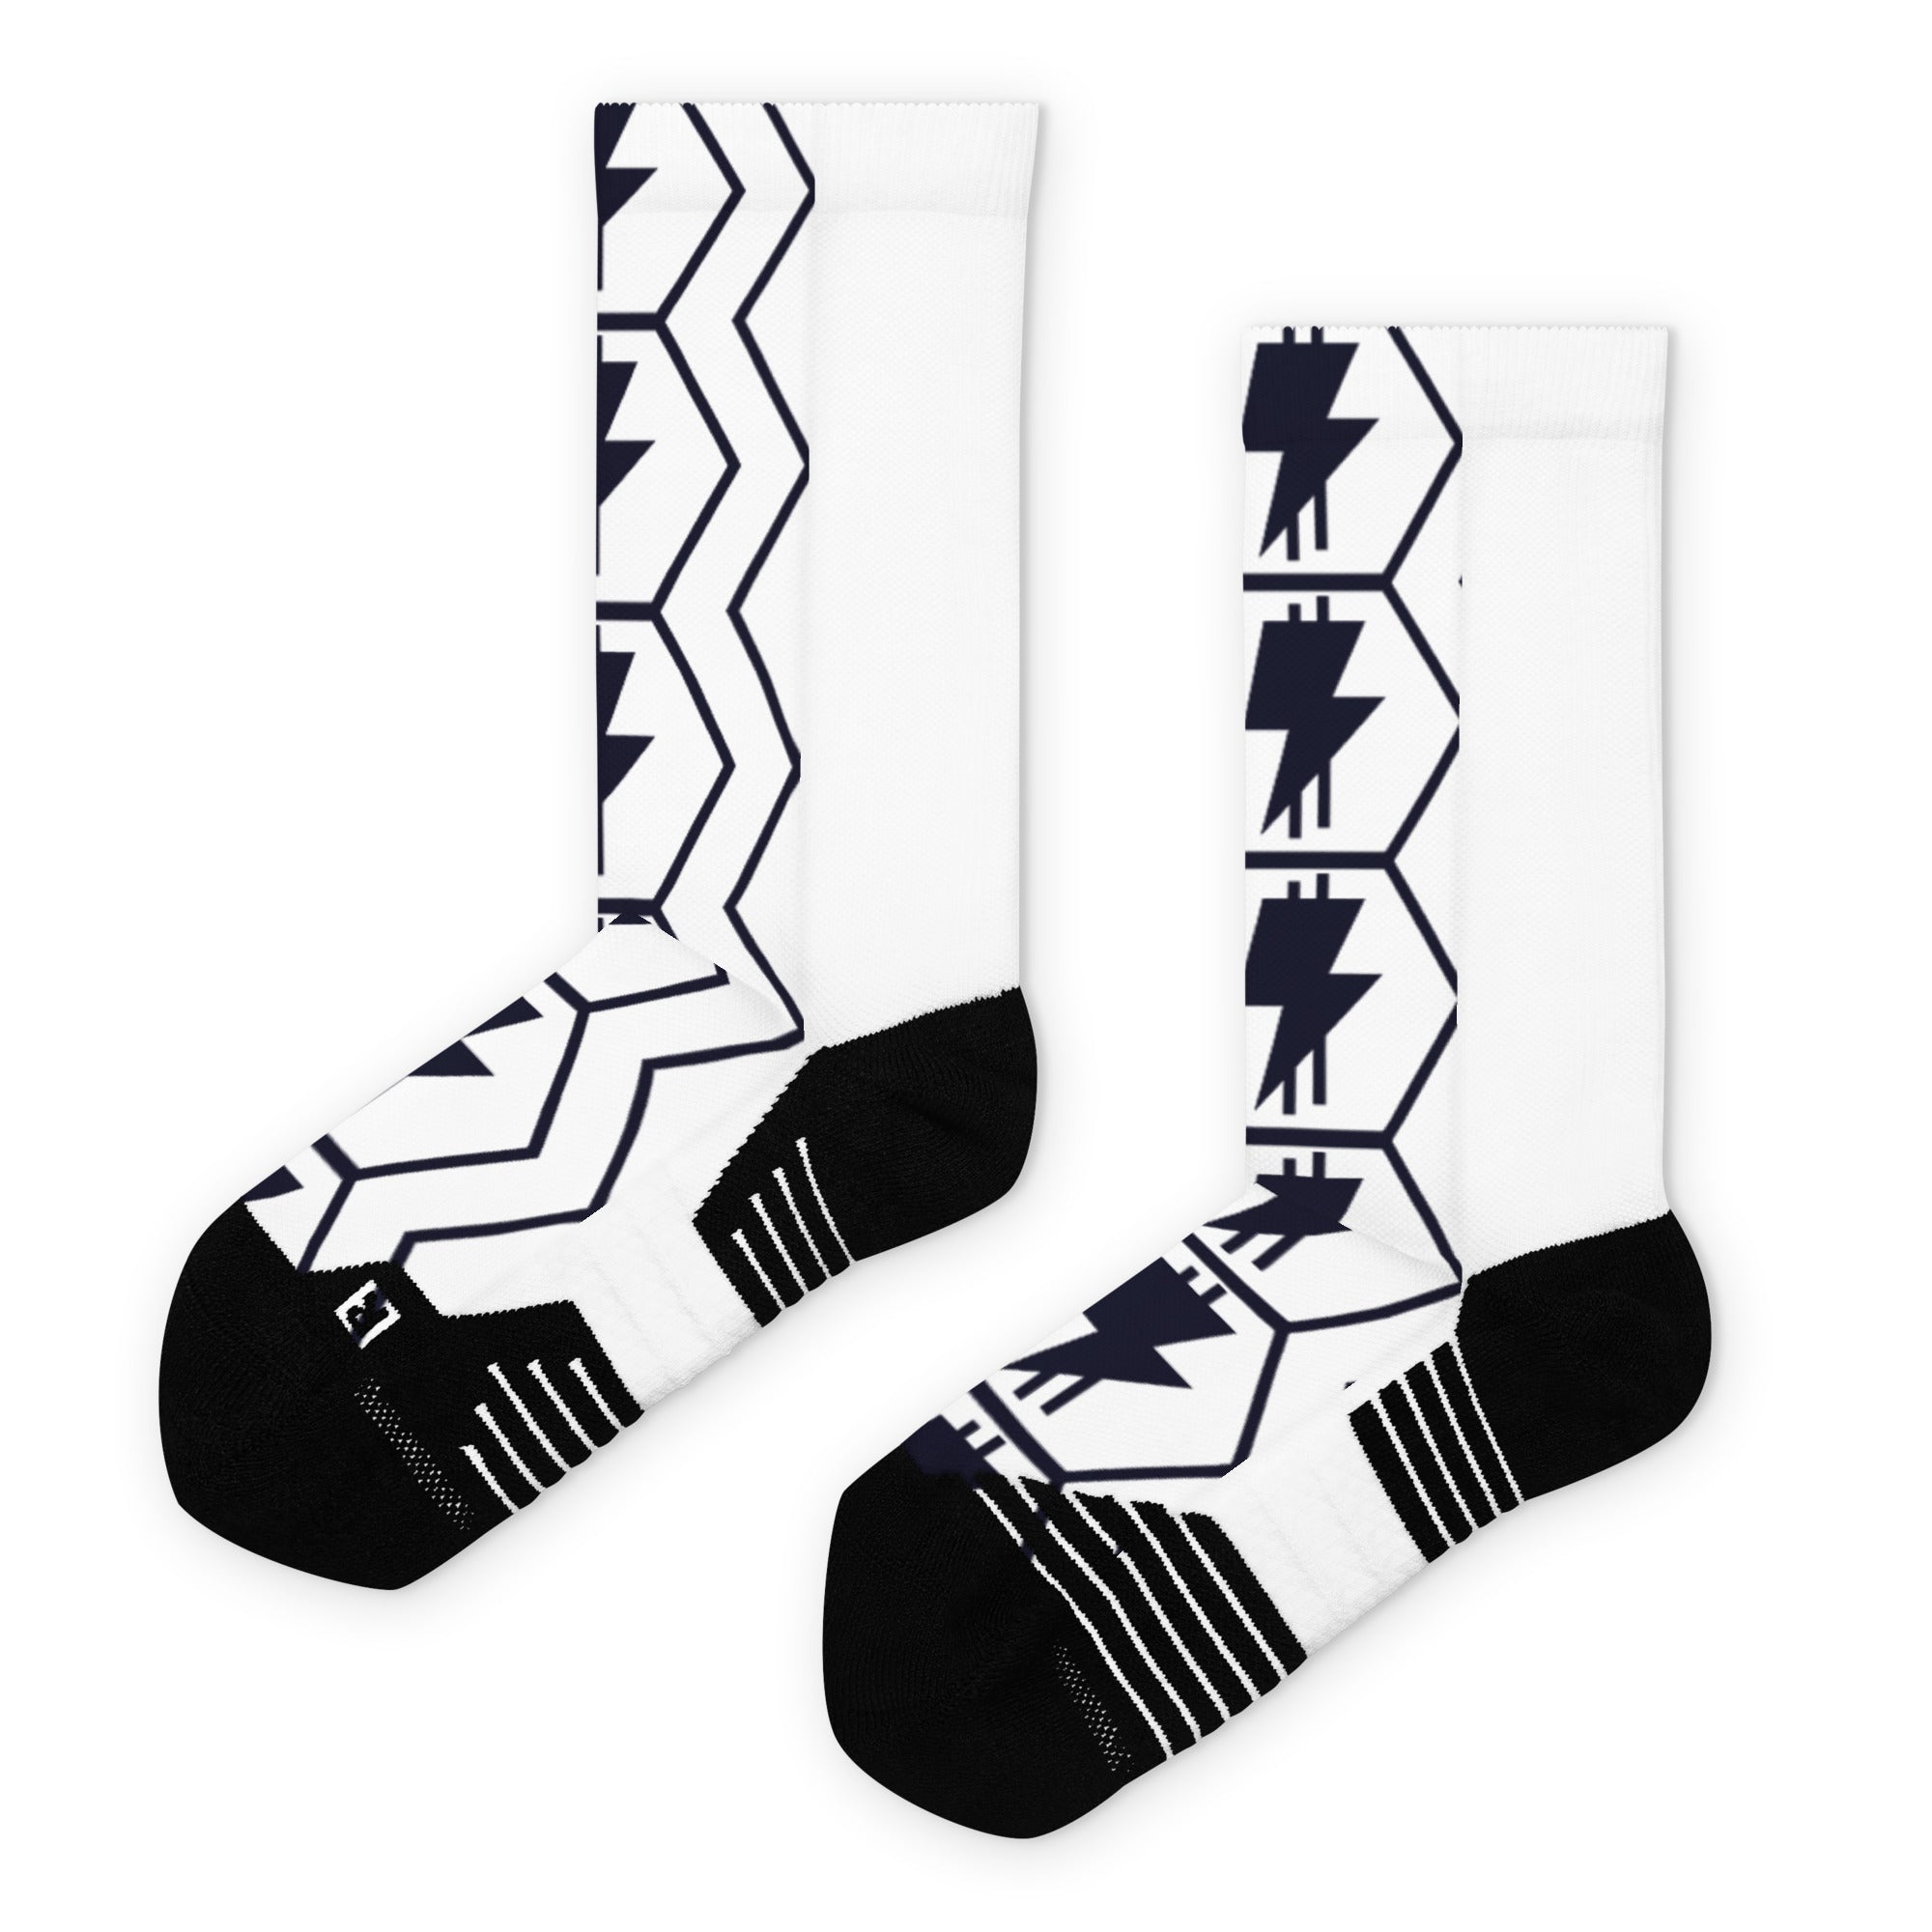 'Lightning Money' Basketball socks